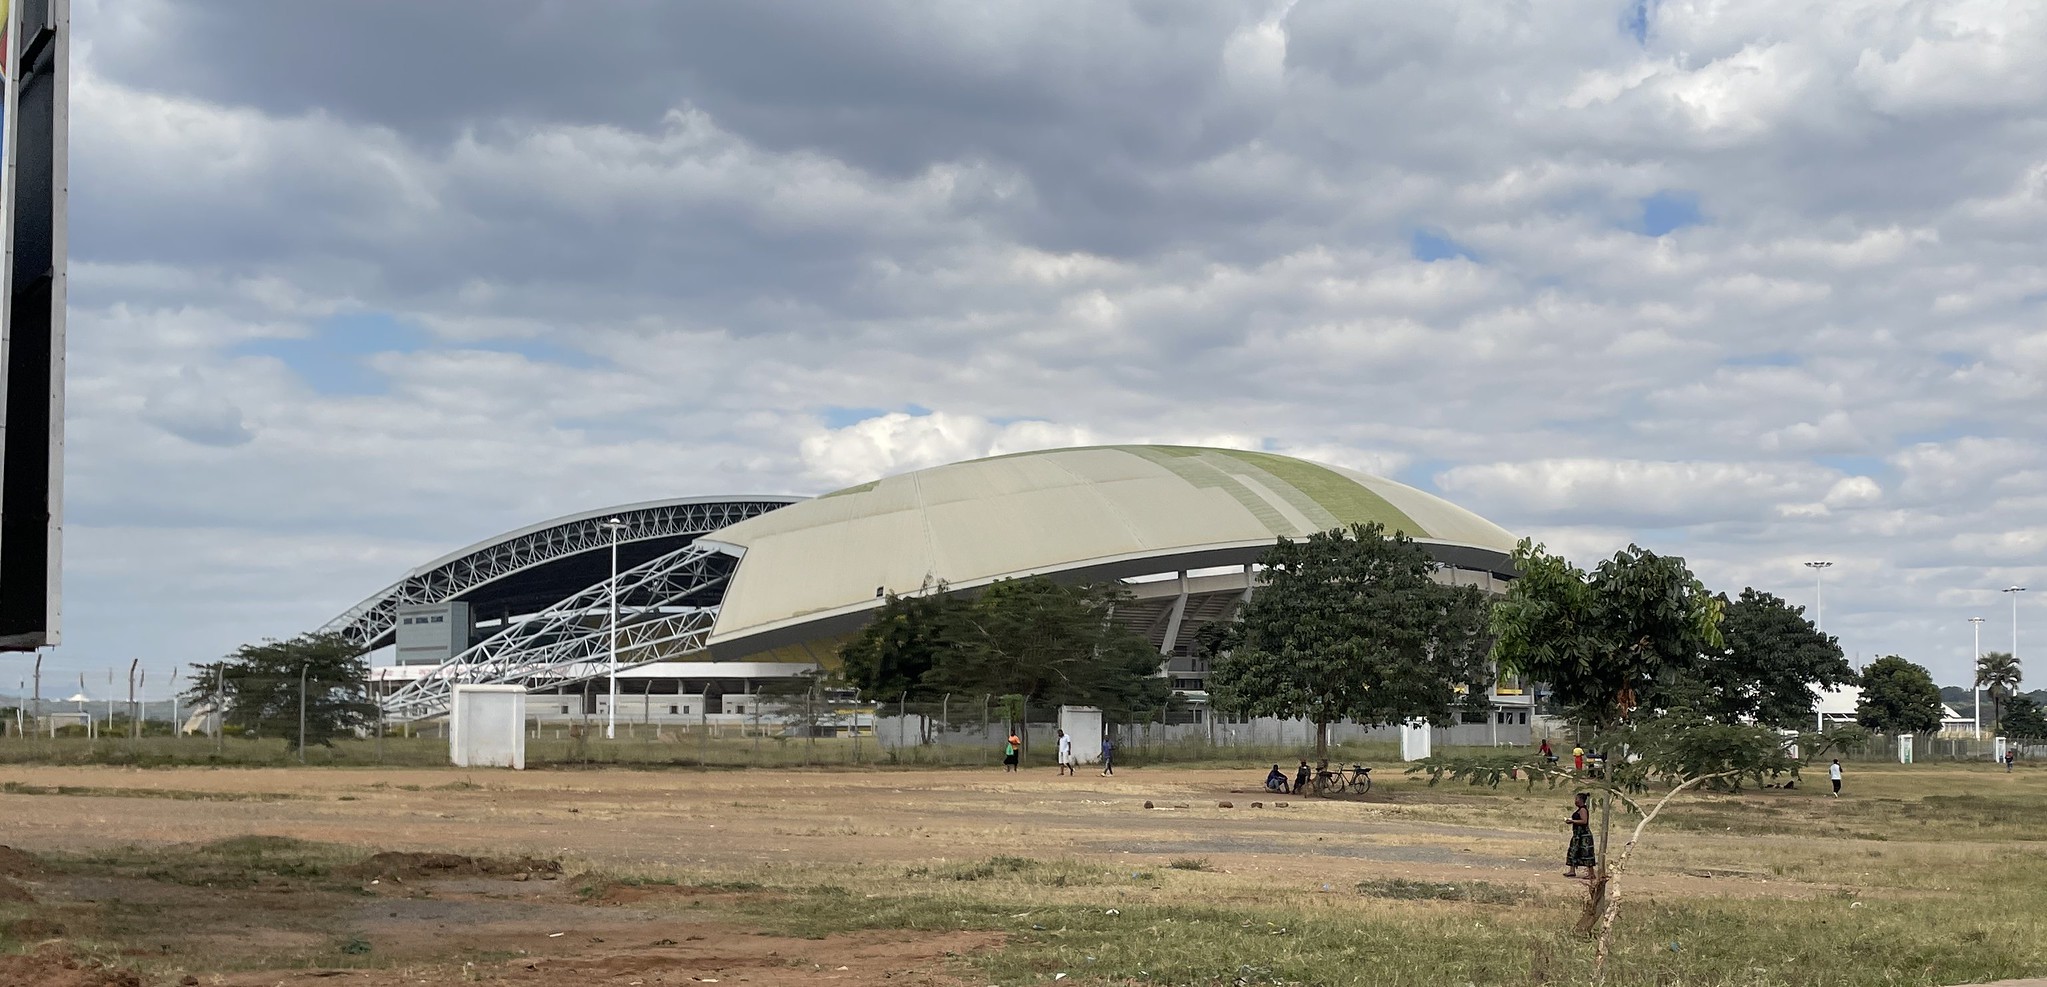 MALAWI’S NATIONAL STADIUM